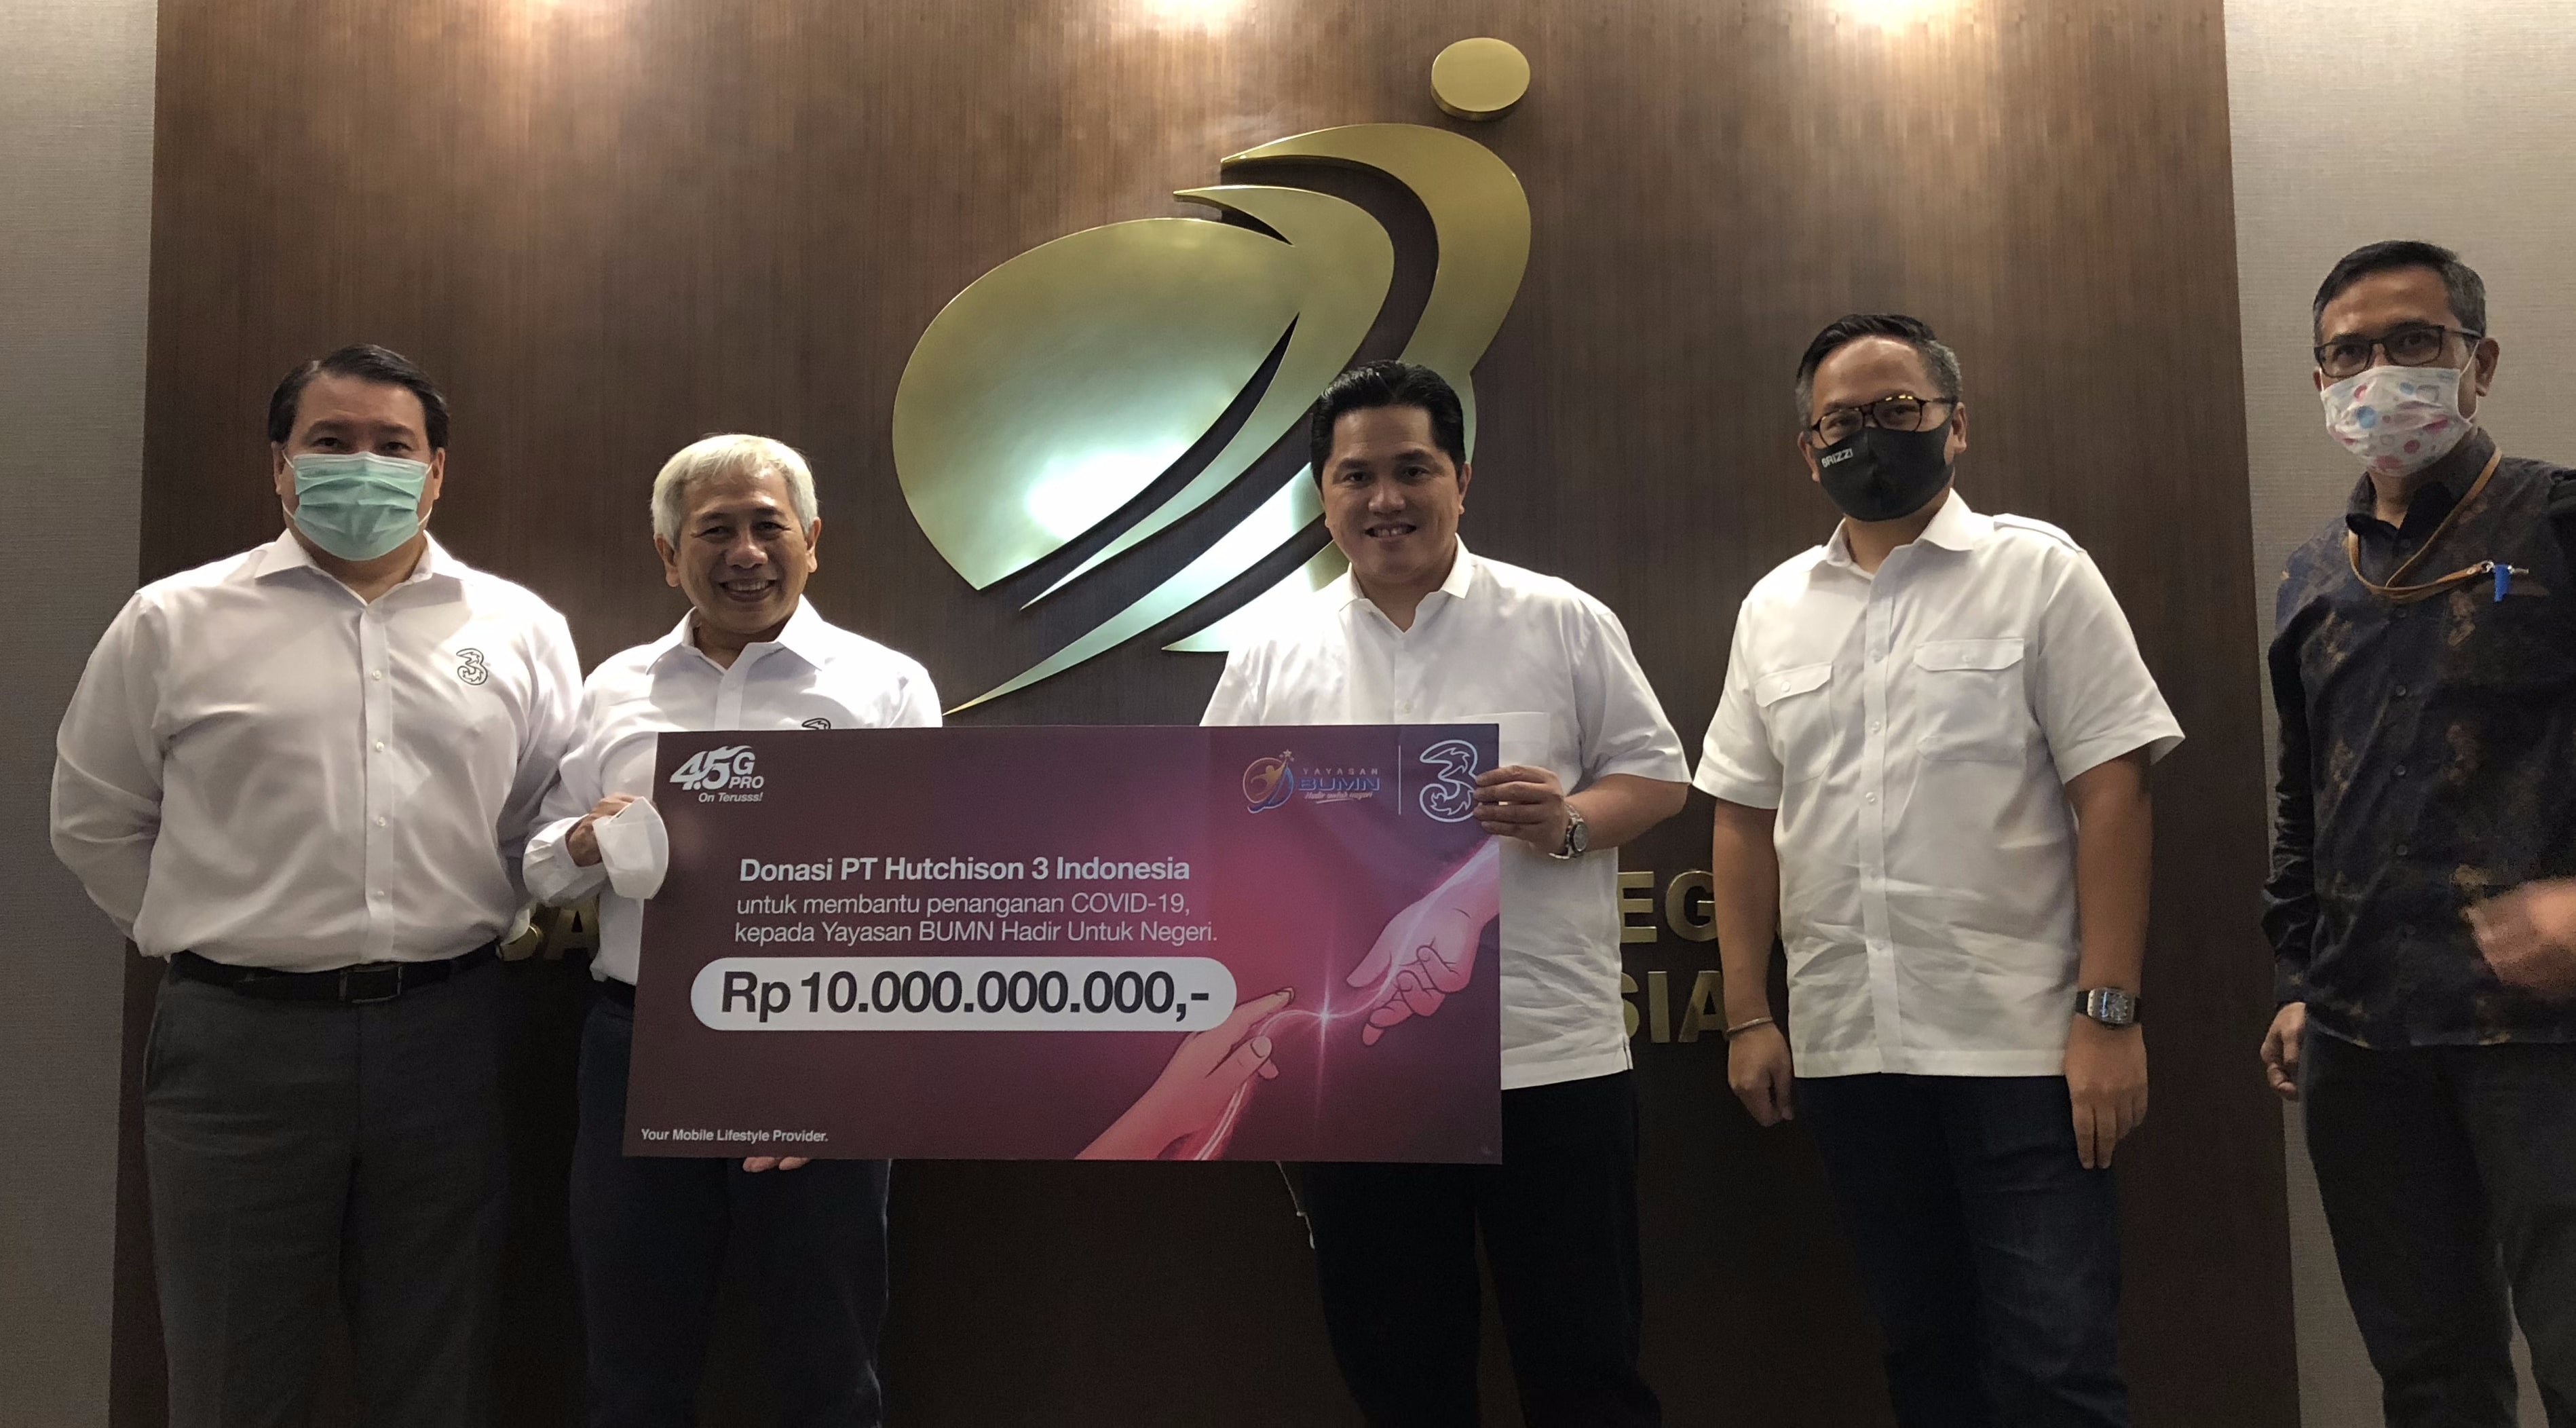 3 Indonesia Bergabung Dengan Yayasan BUMN Untuk Indonesia Dalam Menopang Upaya Mitigasi COVID-19